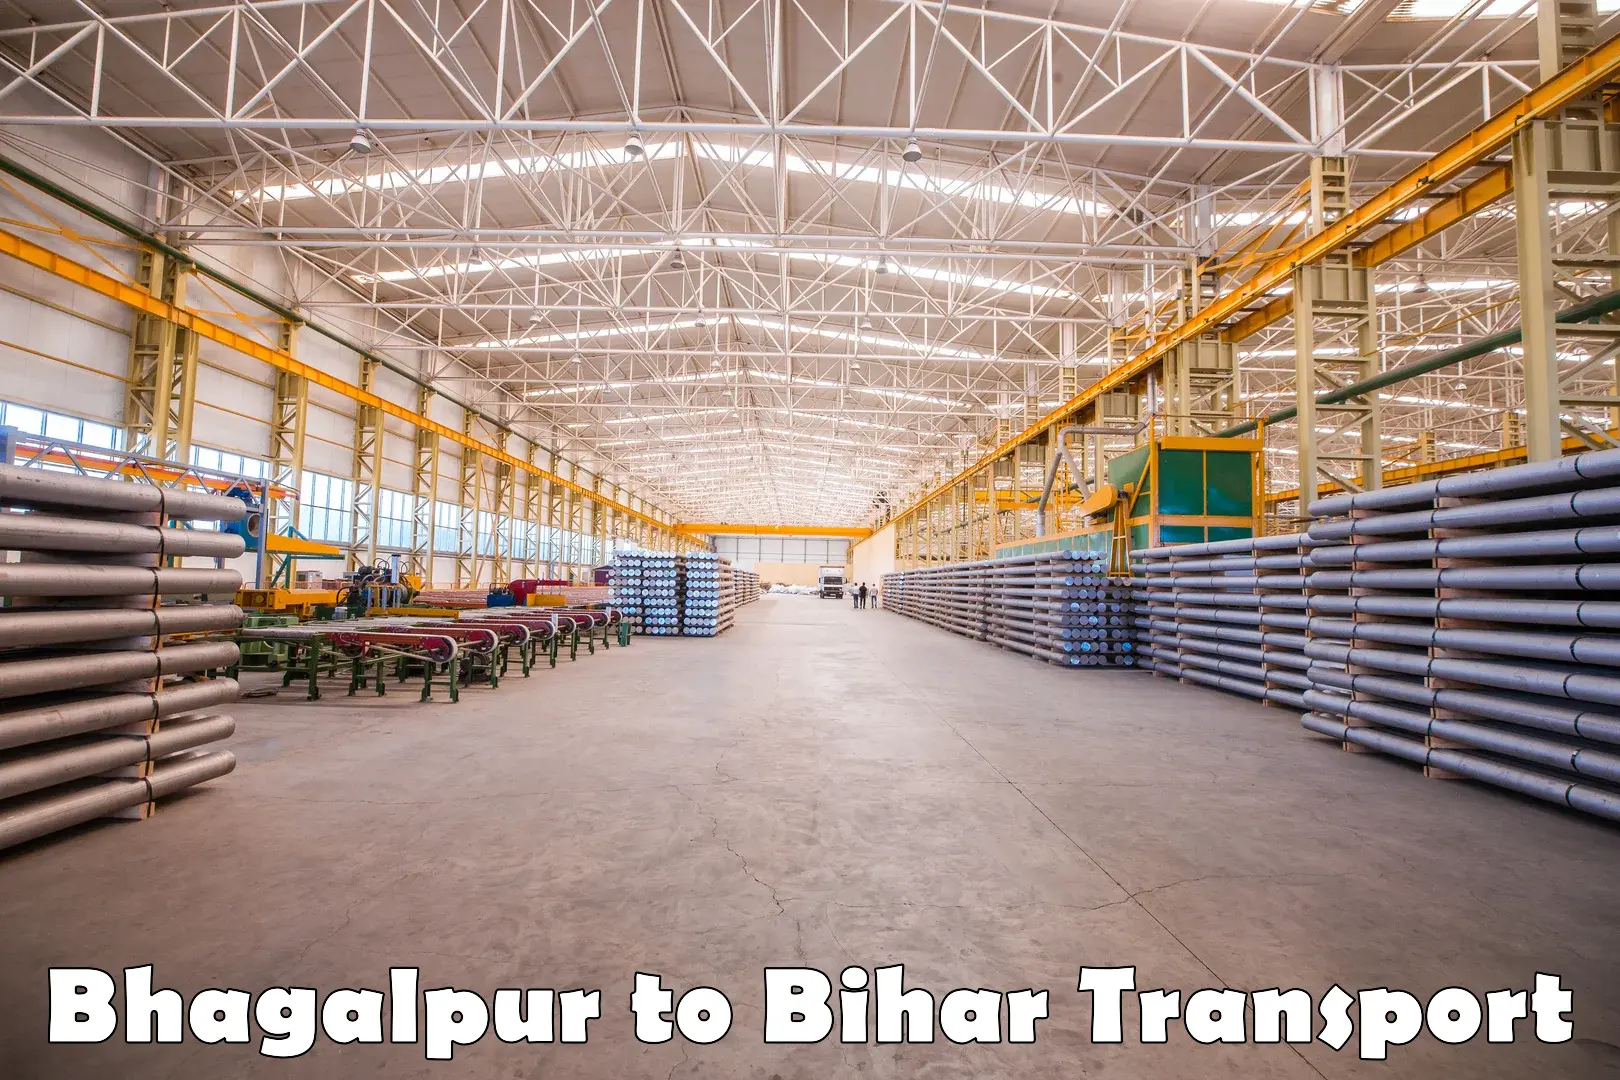 Interstate transport services Bhagalpur to Katihar